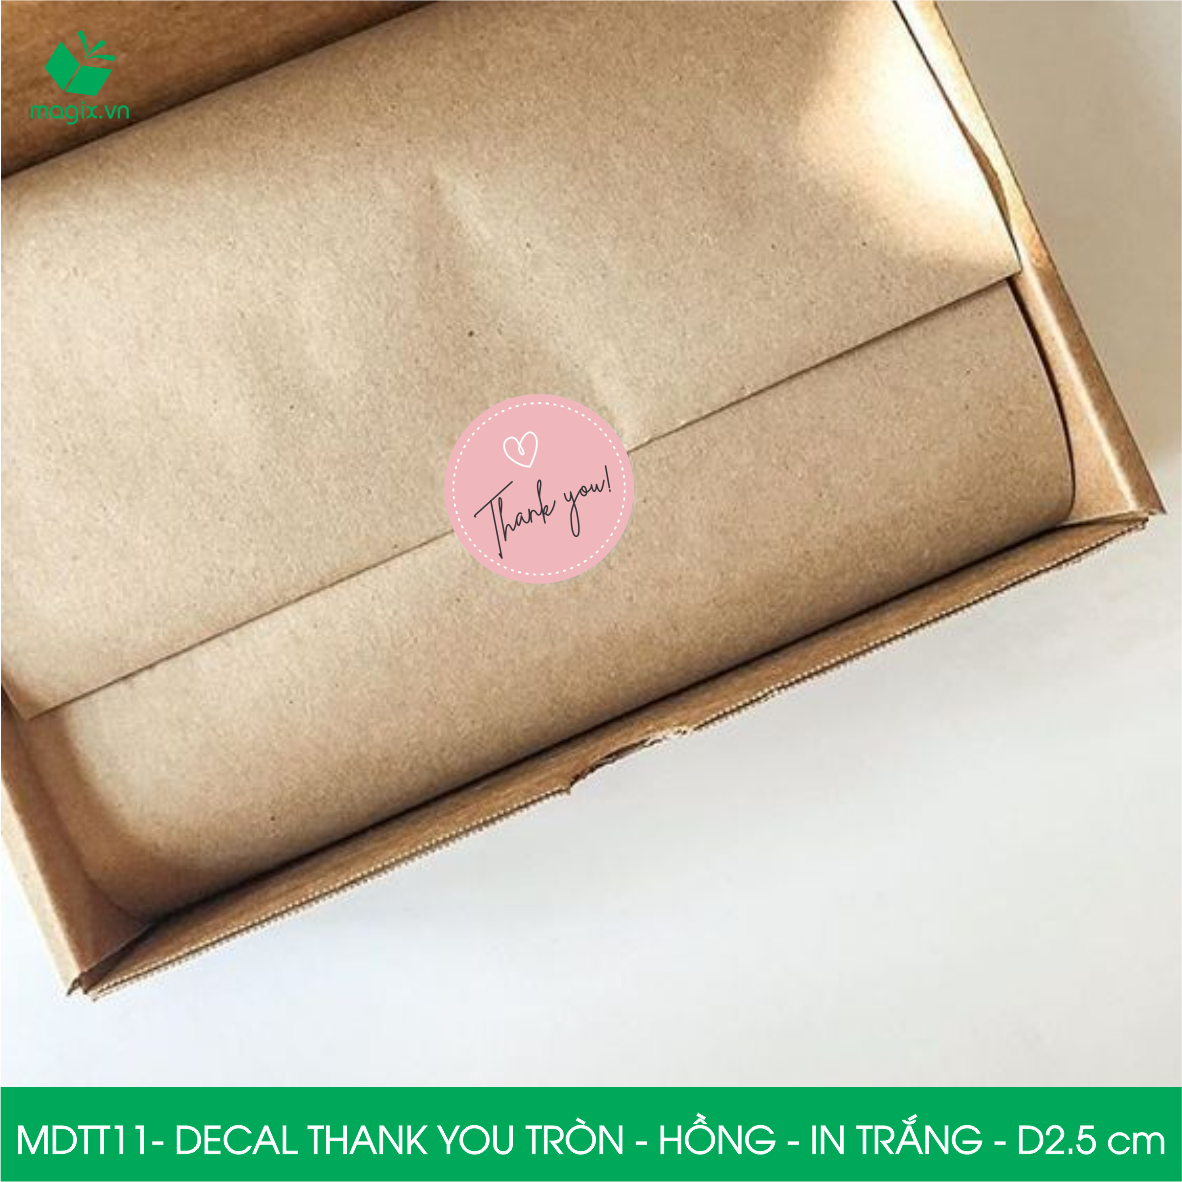 MDTT11 - D2.5cm - 1000 Sticker Thank you, decal Thank you tròn dán hộp carton, tem cám ơn, nhãn dán cảm ơn trang trí gói hàng